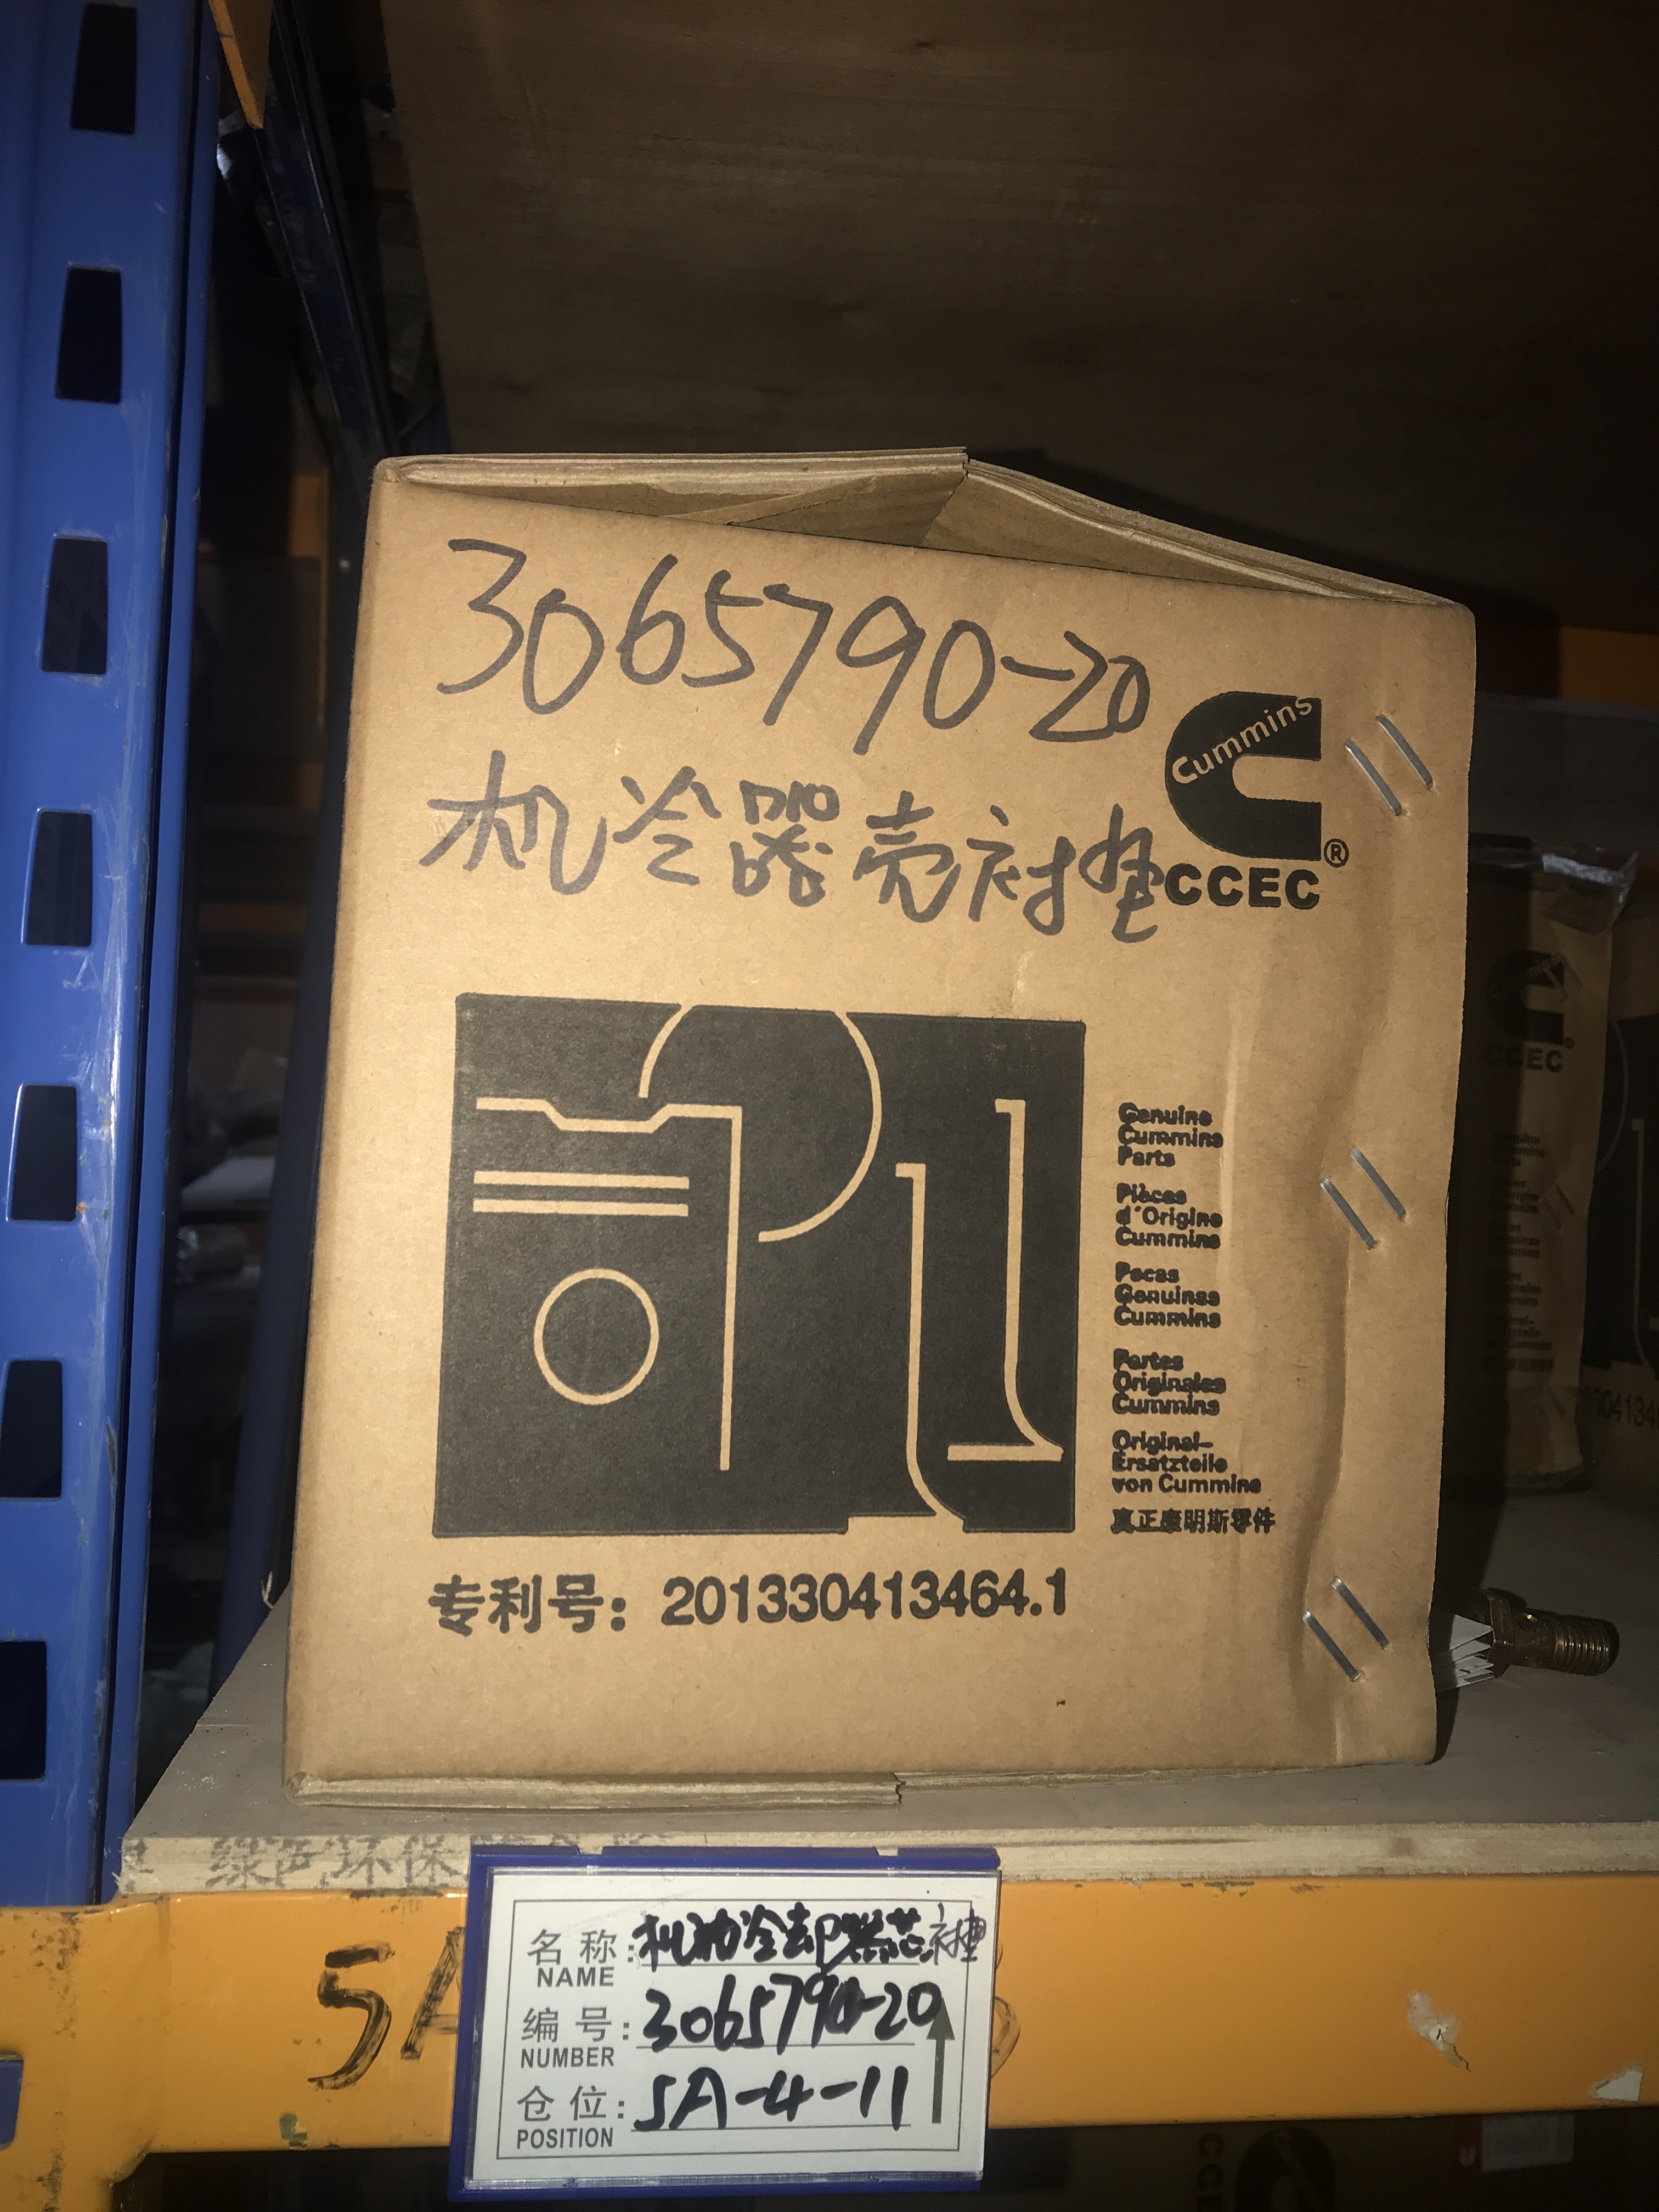 重庆康明斯   机冷器壳衬垫   3065790-20